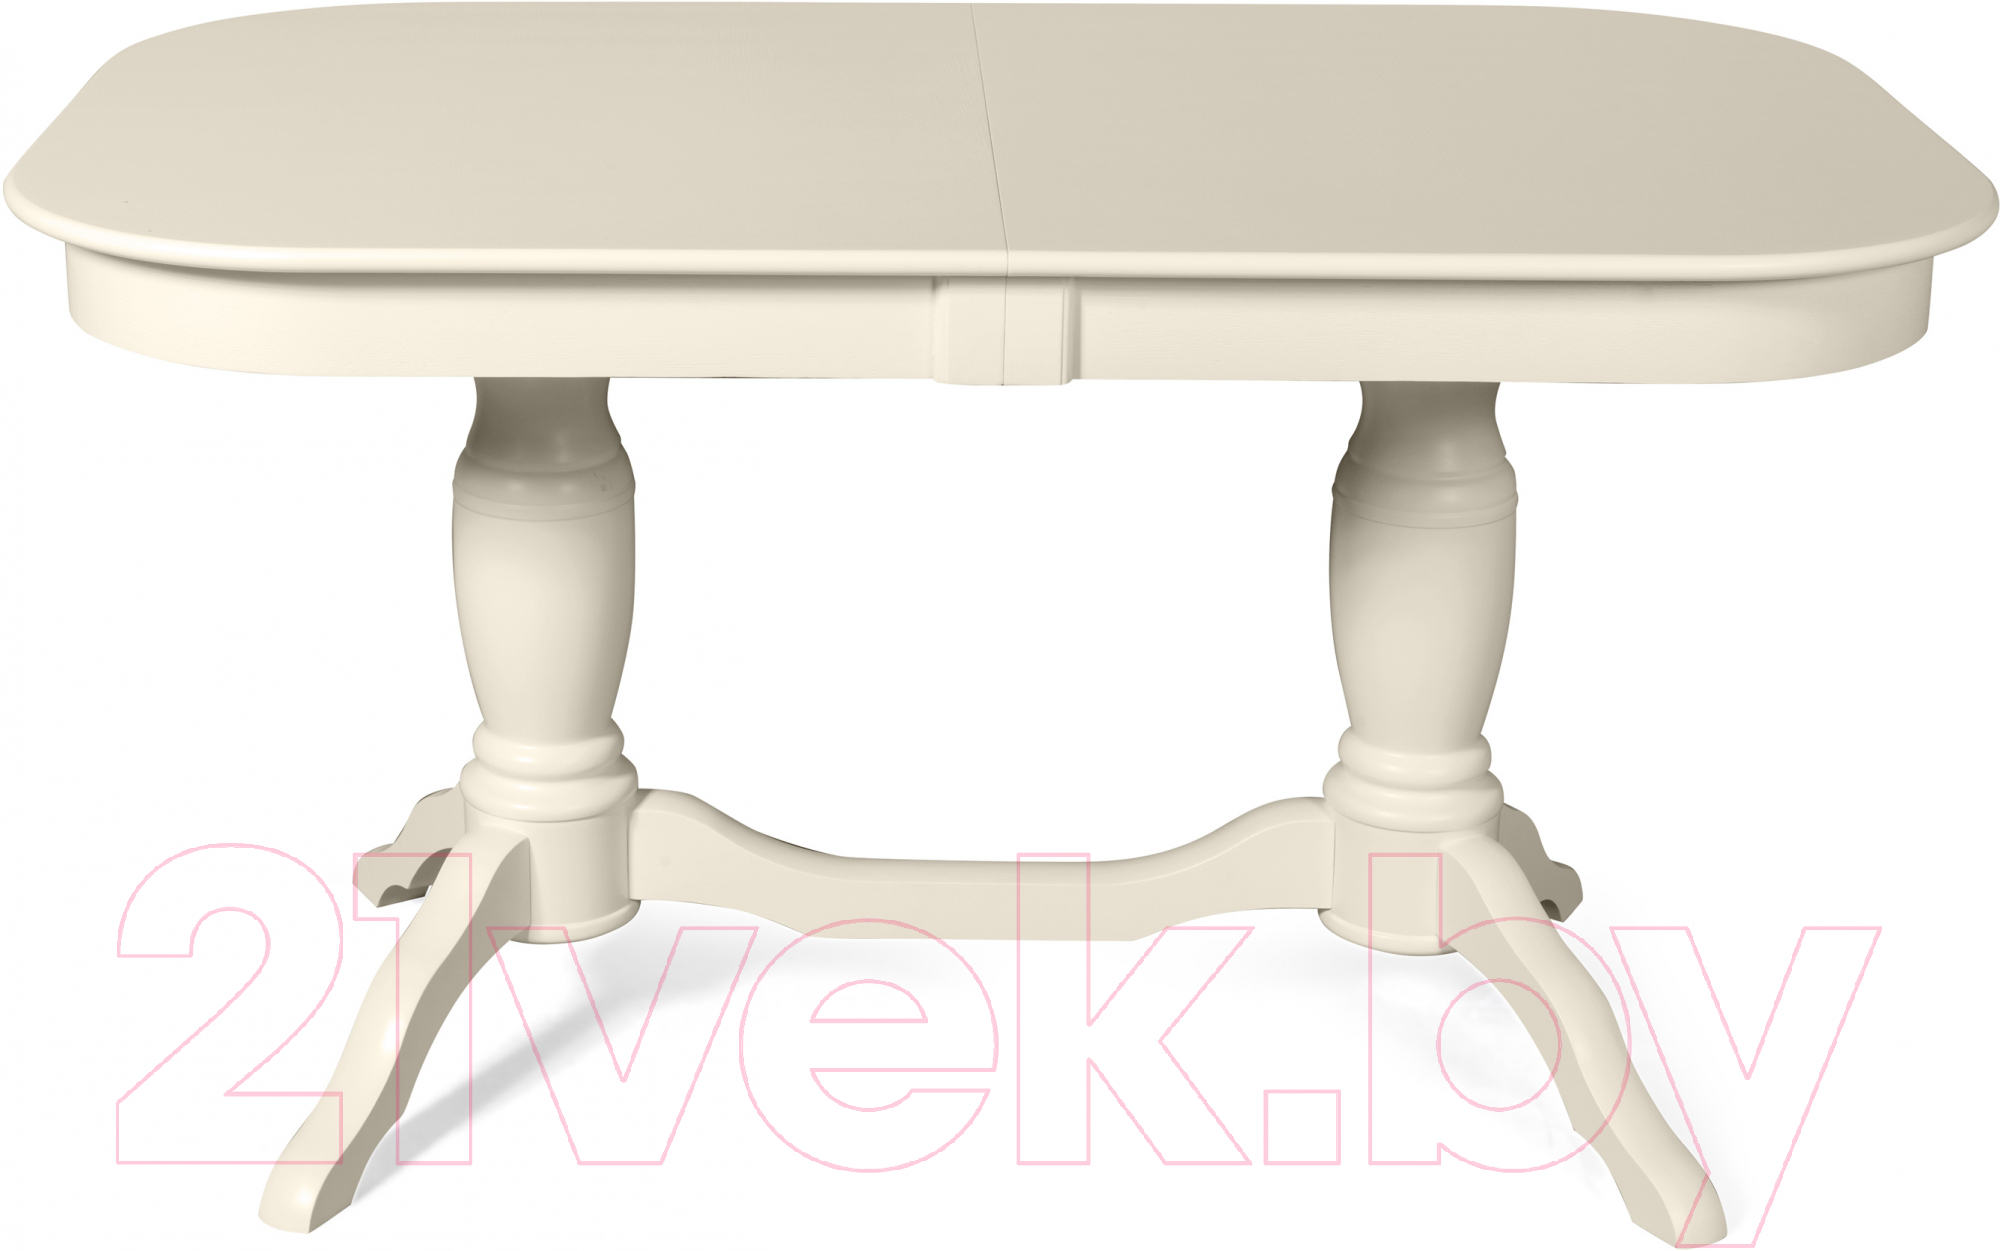 Обеденный стол Мебель-Класс Арго